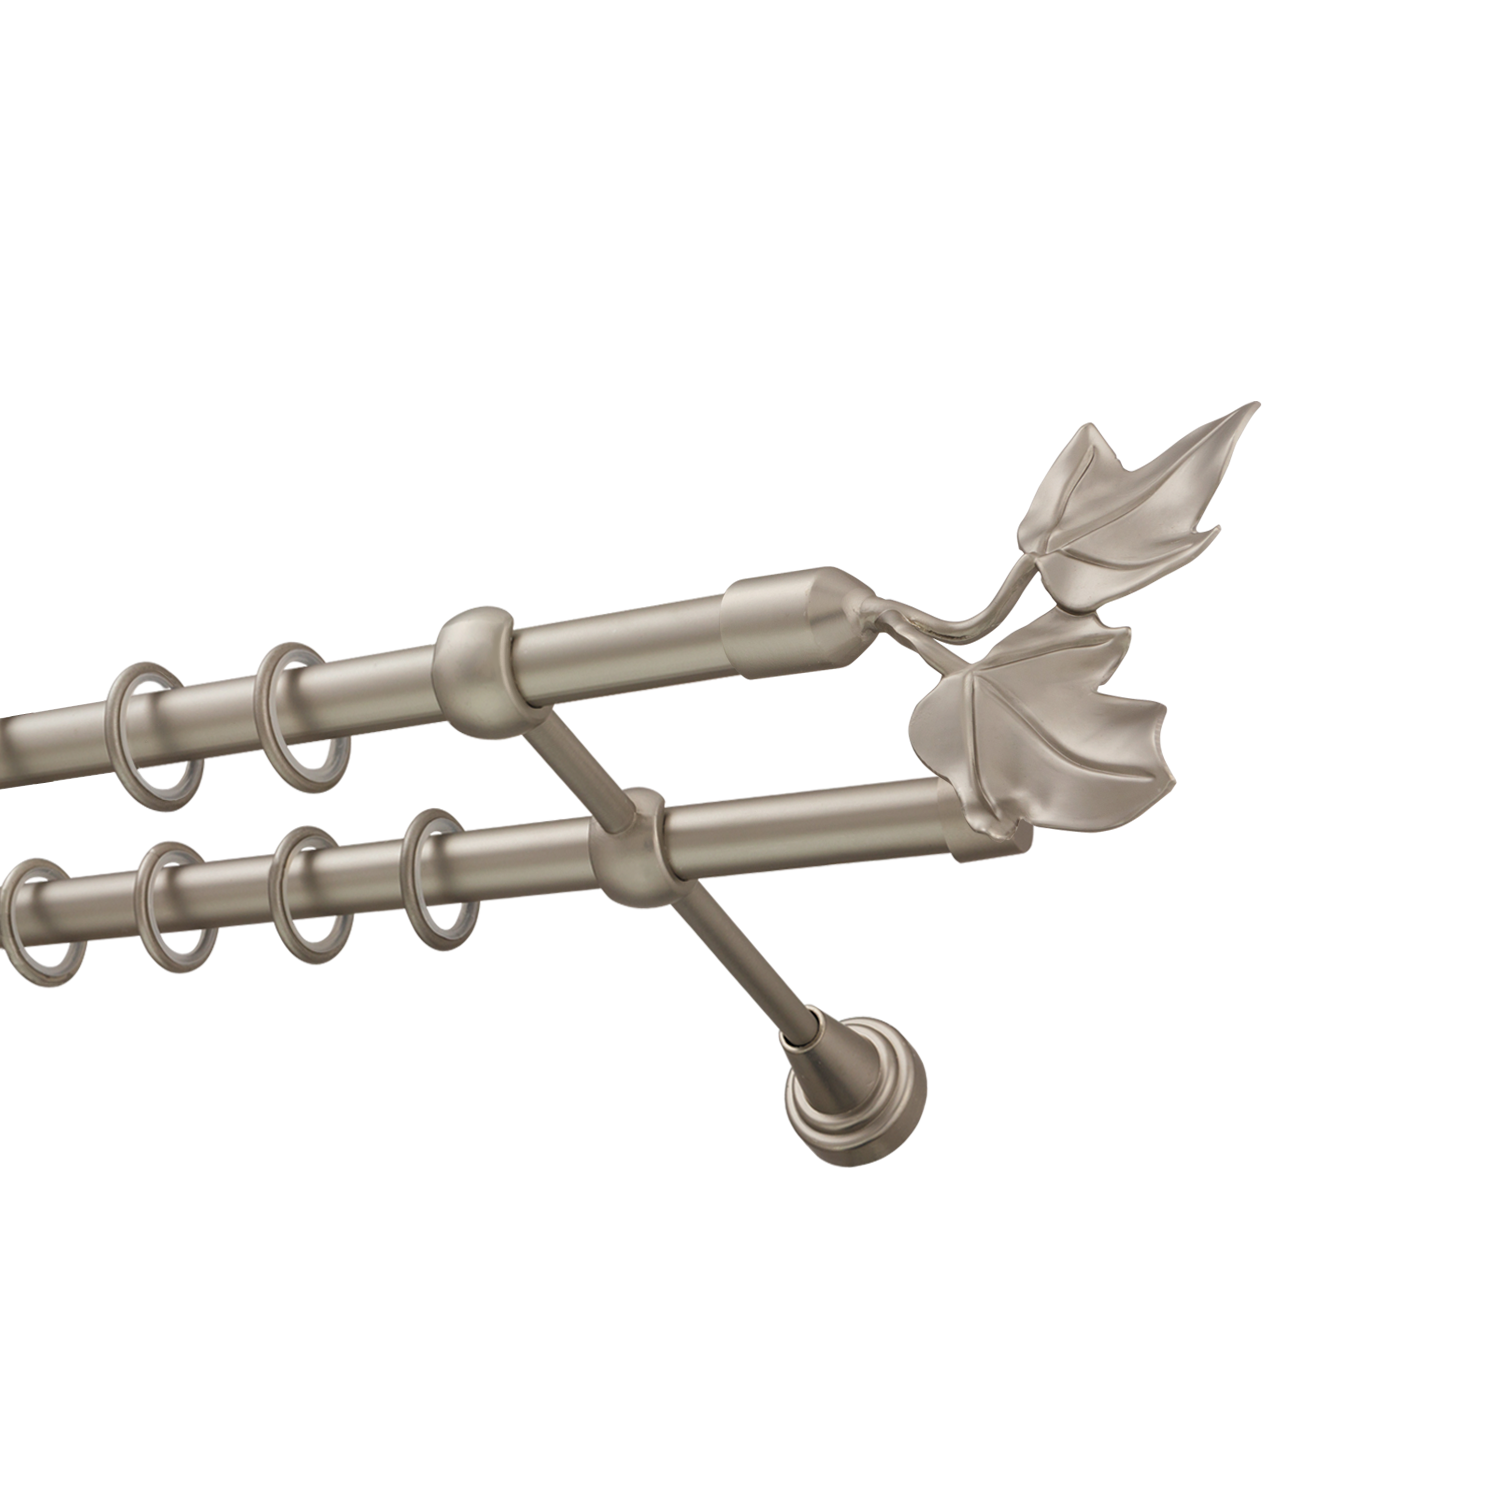 Металлический карниз для штор Листья, двухрядный 16/16 мм, сталь, гладкая штанга, длина 200 см - фото Wikidecor.ru